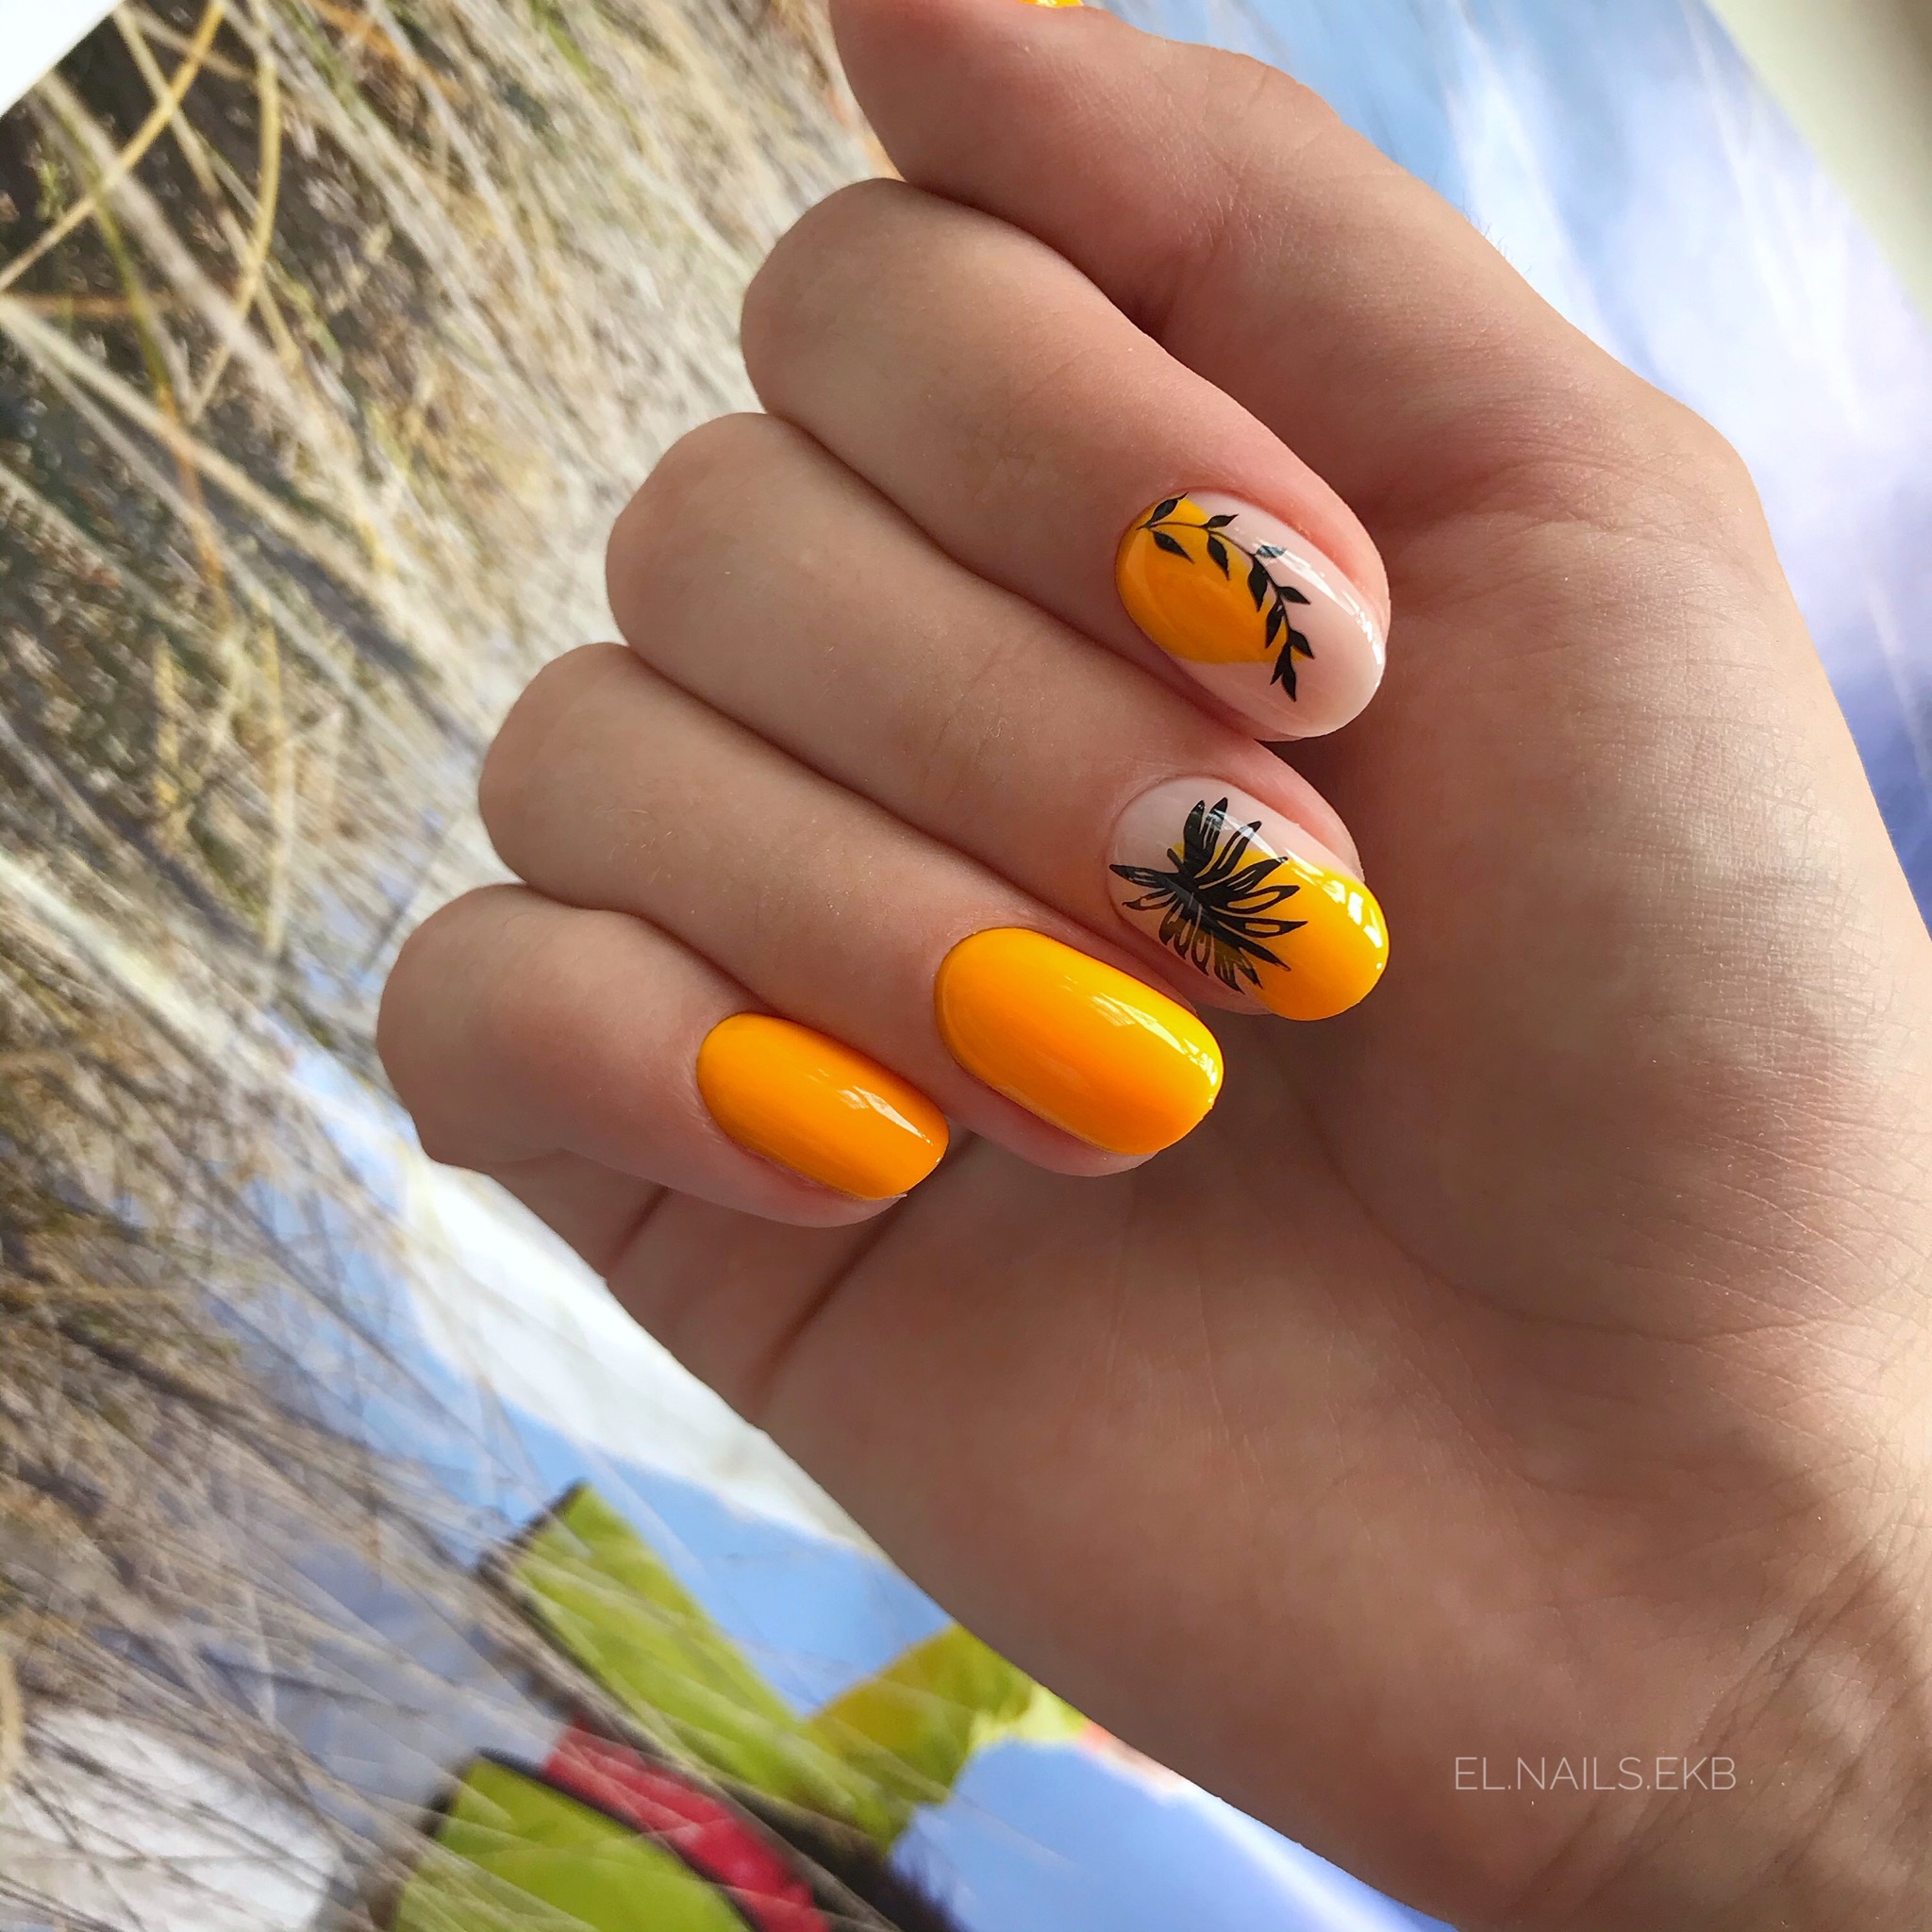 Маникюр с растительными 
слайдерами в оранжевом цвете на короткие ногти.